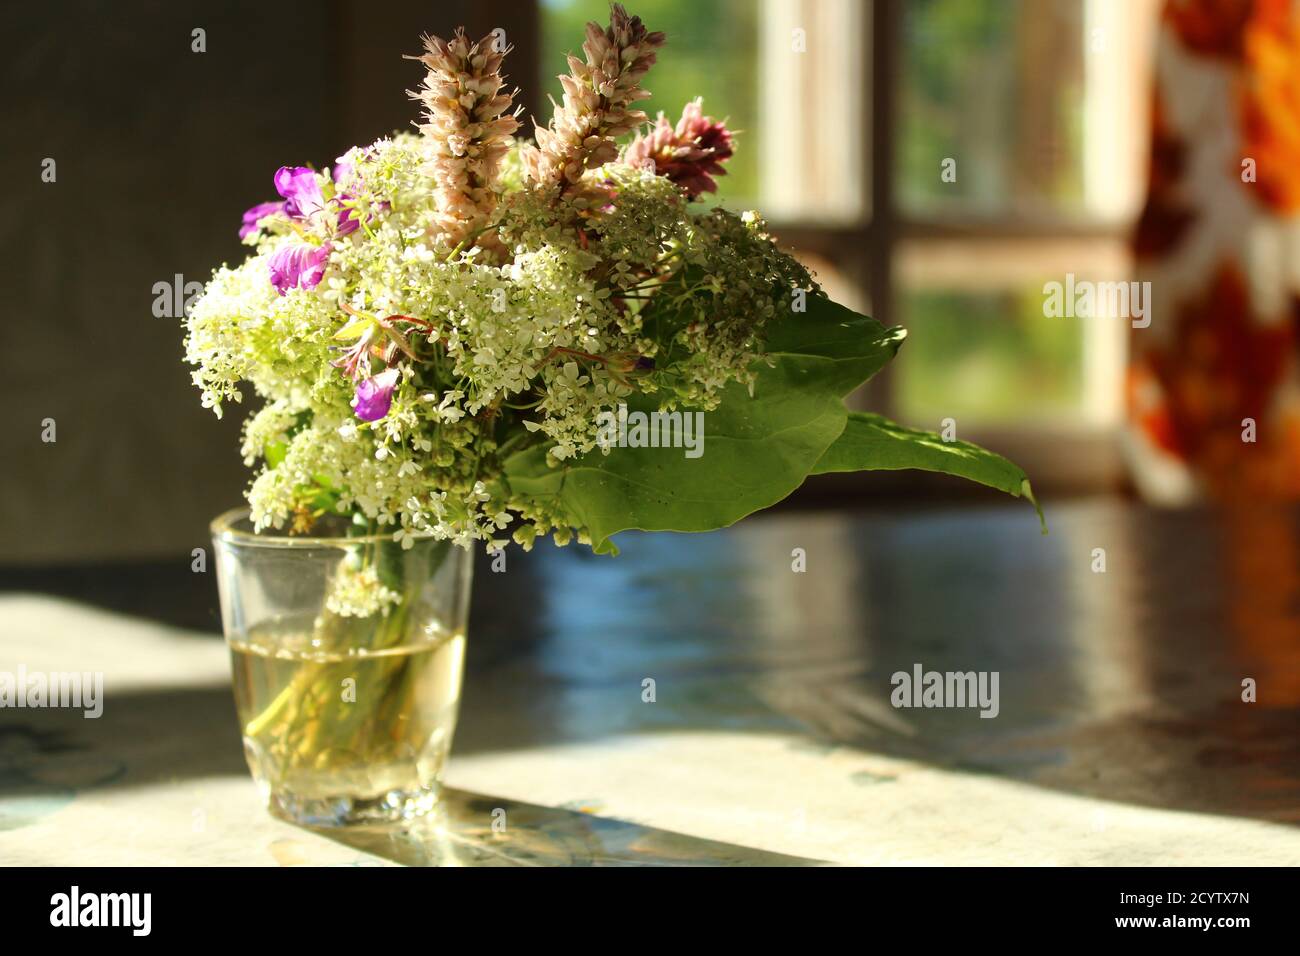 Schöne kleine Komposition von Blumen in einer Vase auf einem Tisch durch Sonnenlicht beleuchtet Stockfoto